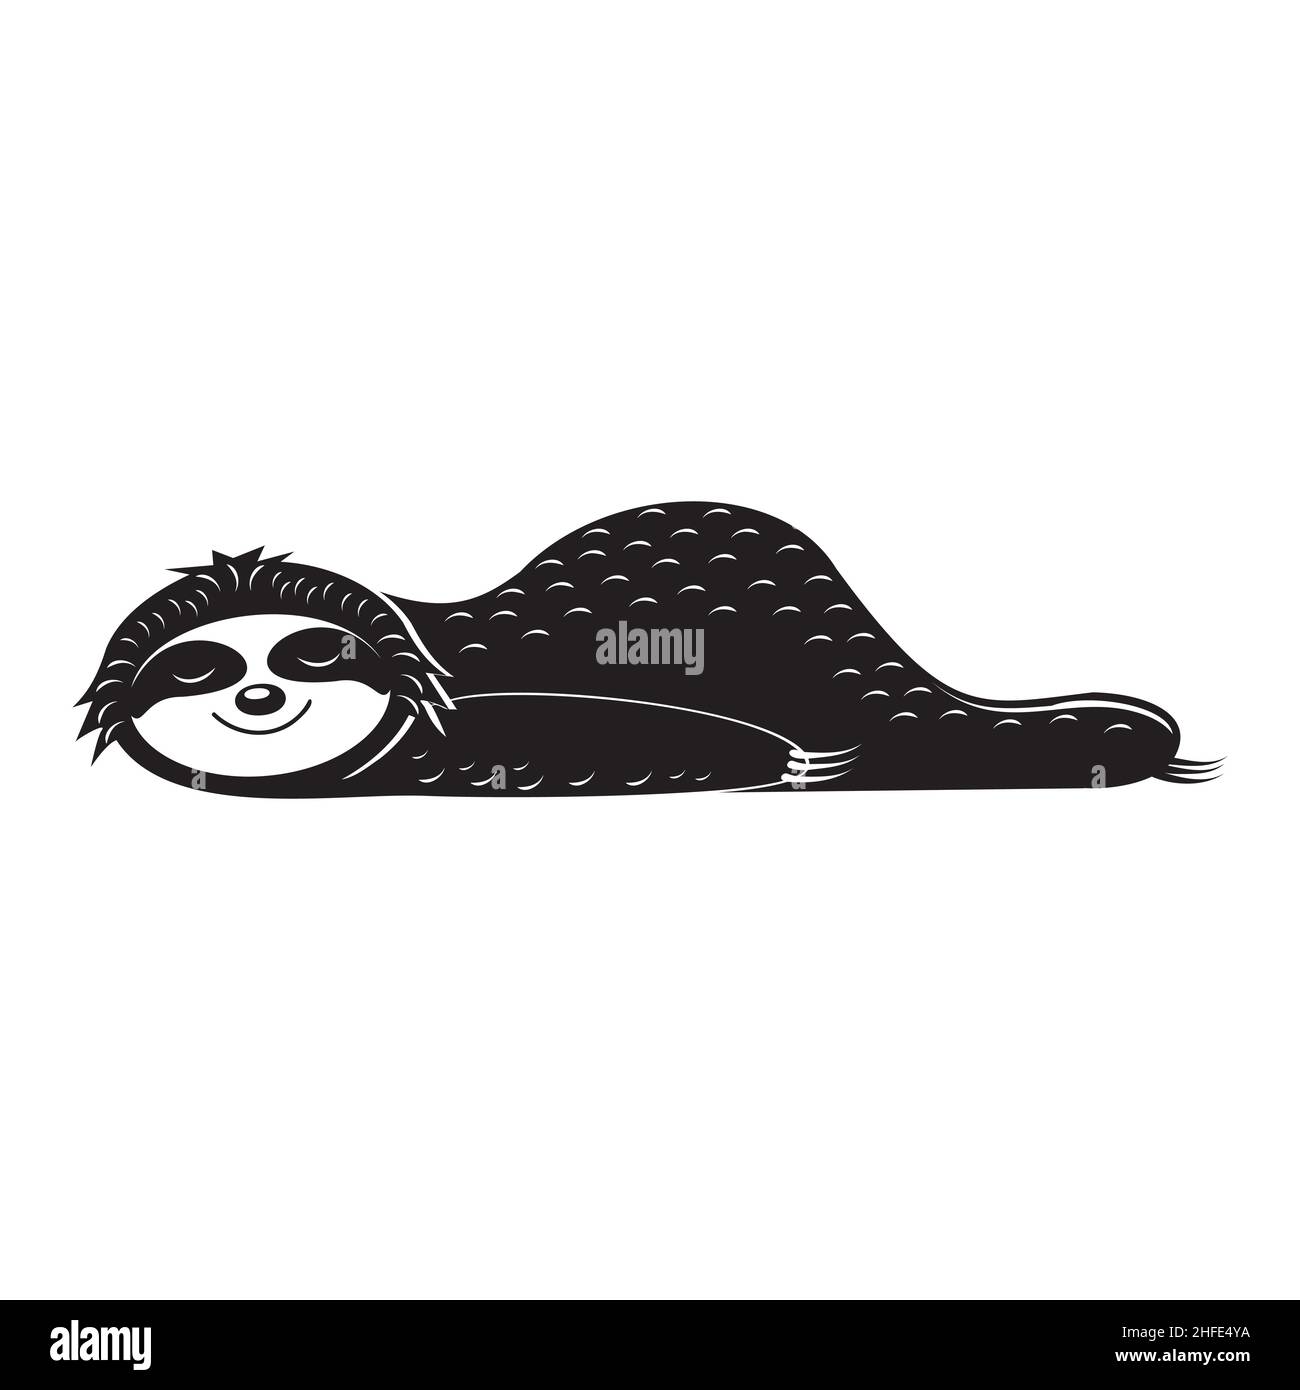 Faultier müde liegend ruhen, Vektor-Illustration schwarz Cartoon Schablone Clipart drucken Design drucken Aufkleber Design Stock Vektor